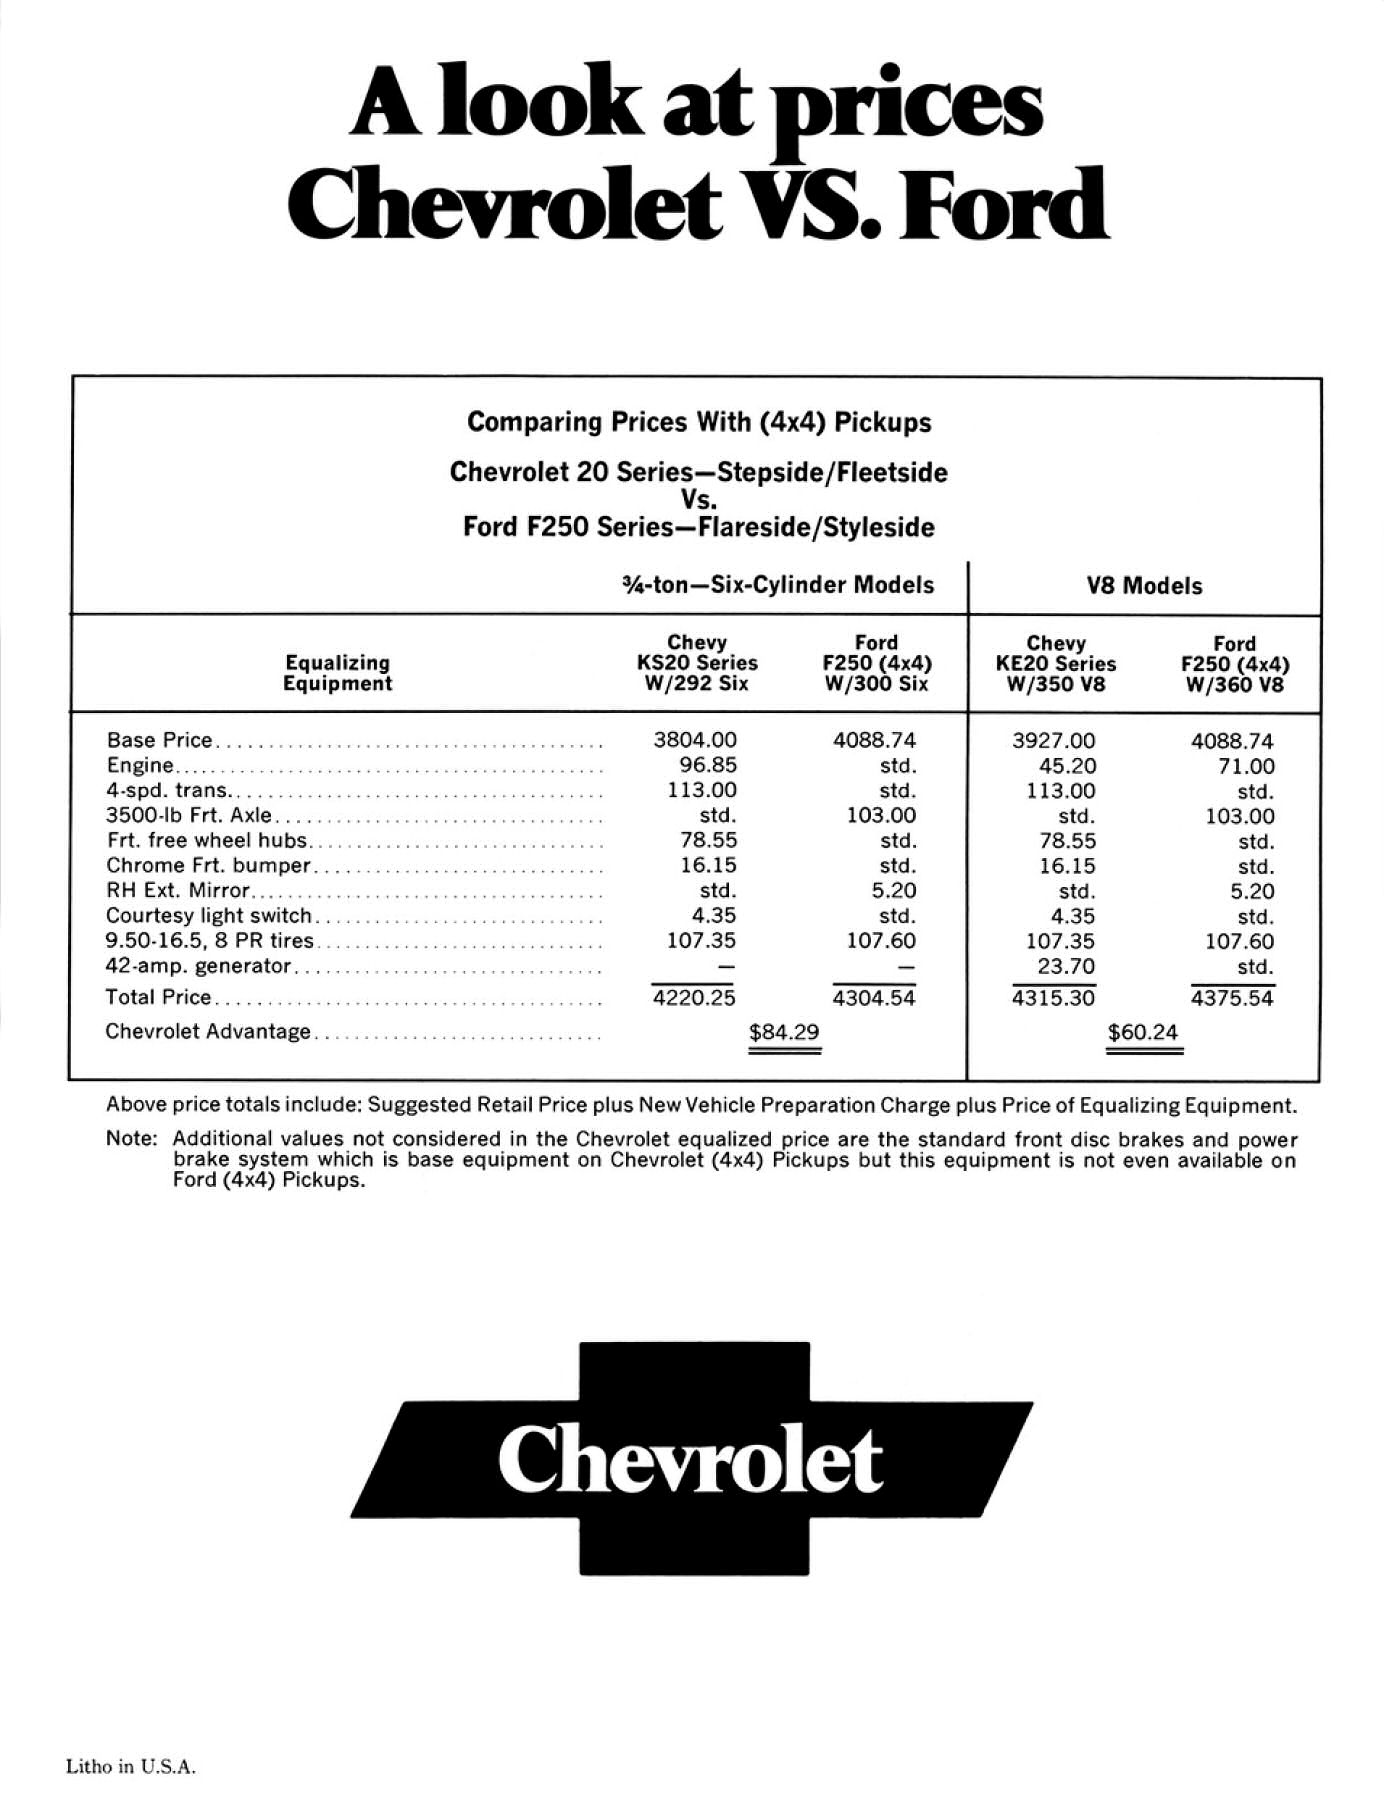 1971 Chevrolt Truck Challenges-08